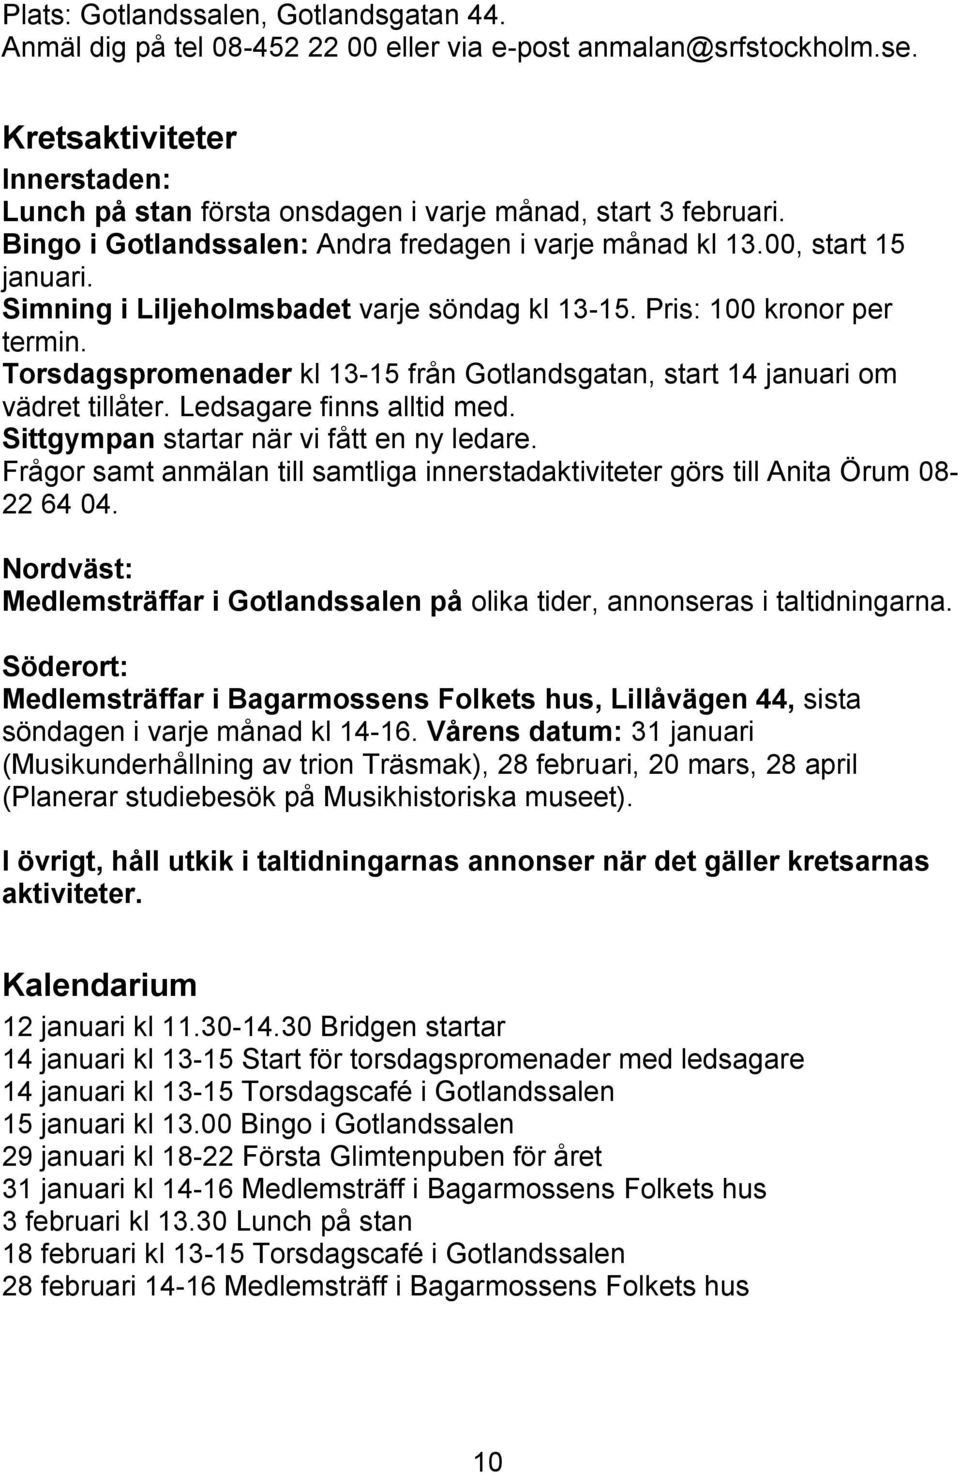 Simning i Liljeholmsbadet varje söndag kl 13-15. Pris: 100 kronor per termin. Torsdagspromenader kl 13-15 från Gotlandsgatan, start 14 januari om vädret tillåter. Ledsagare finns alltid med.